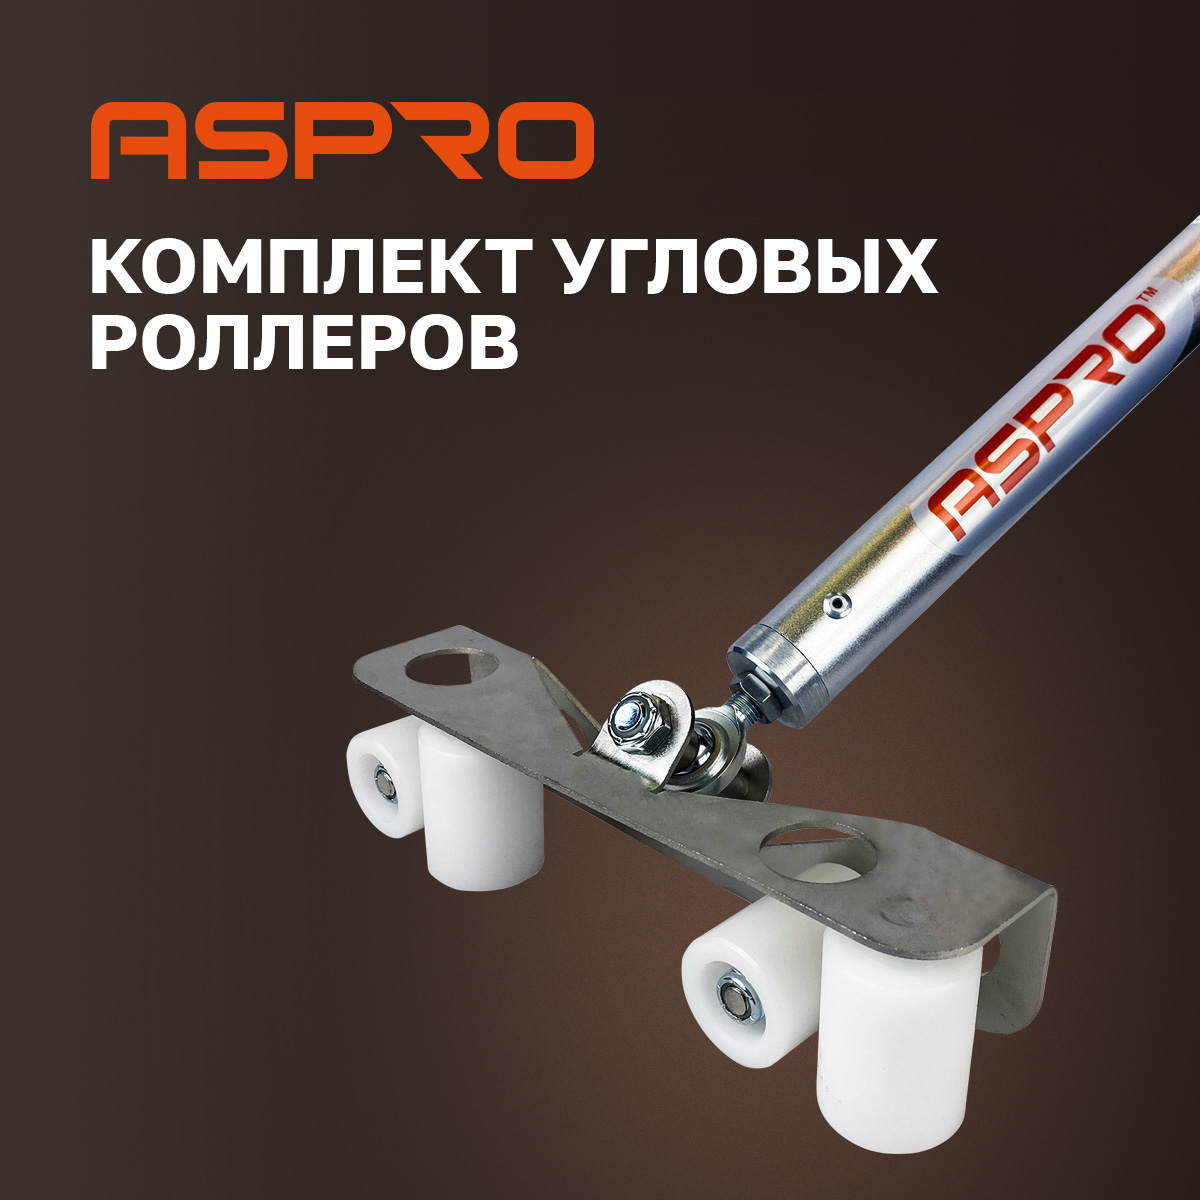 Комплект угловых роллеров Aspro, 102280 комплект соединительных угловых кронштейнов левша